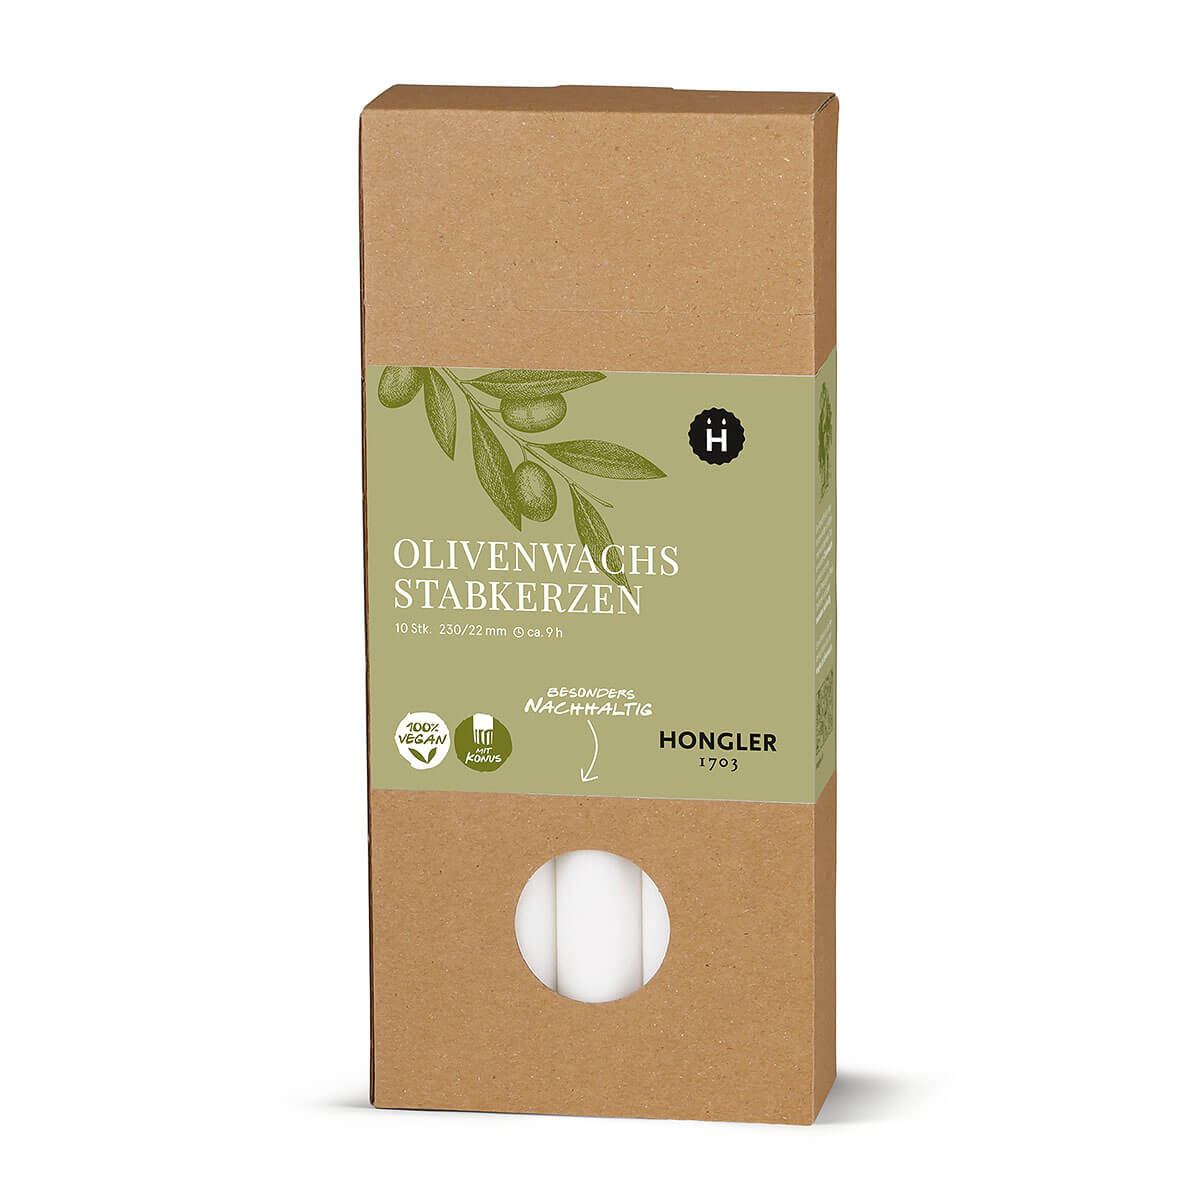 Stabkerzen aus Olivenwachs  – glatt – 230/22 mm – vegan